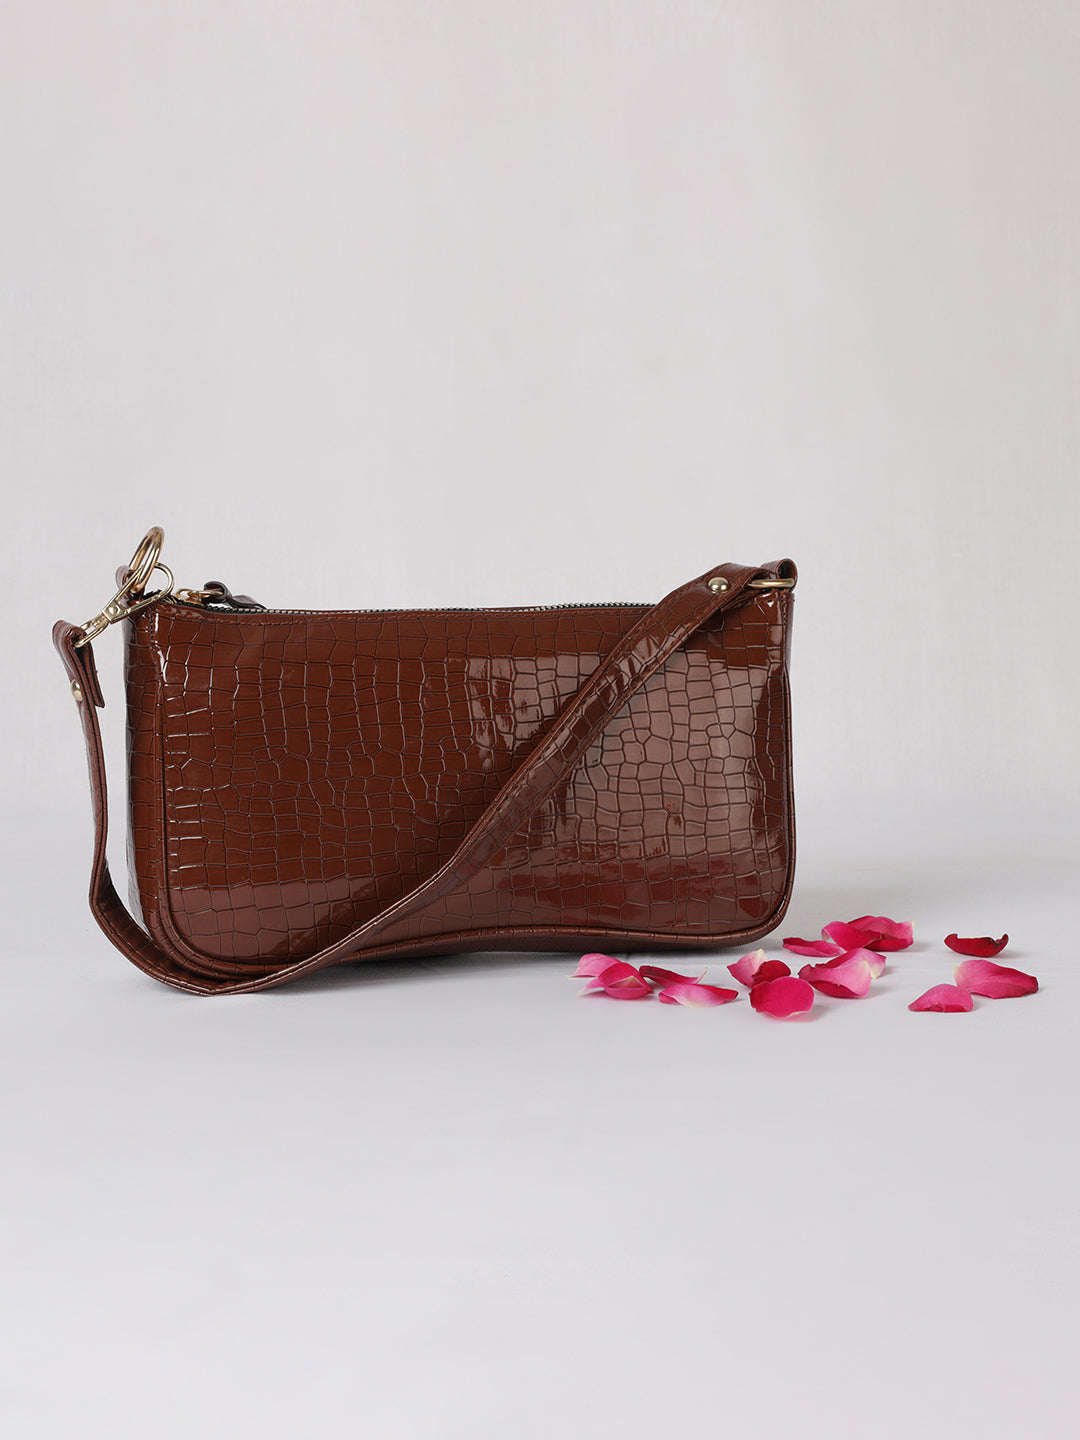 MINI WESST Women's Brown Handbags(MWSB011BR)